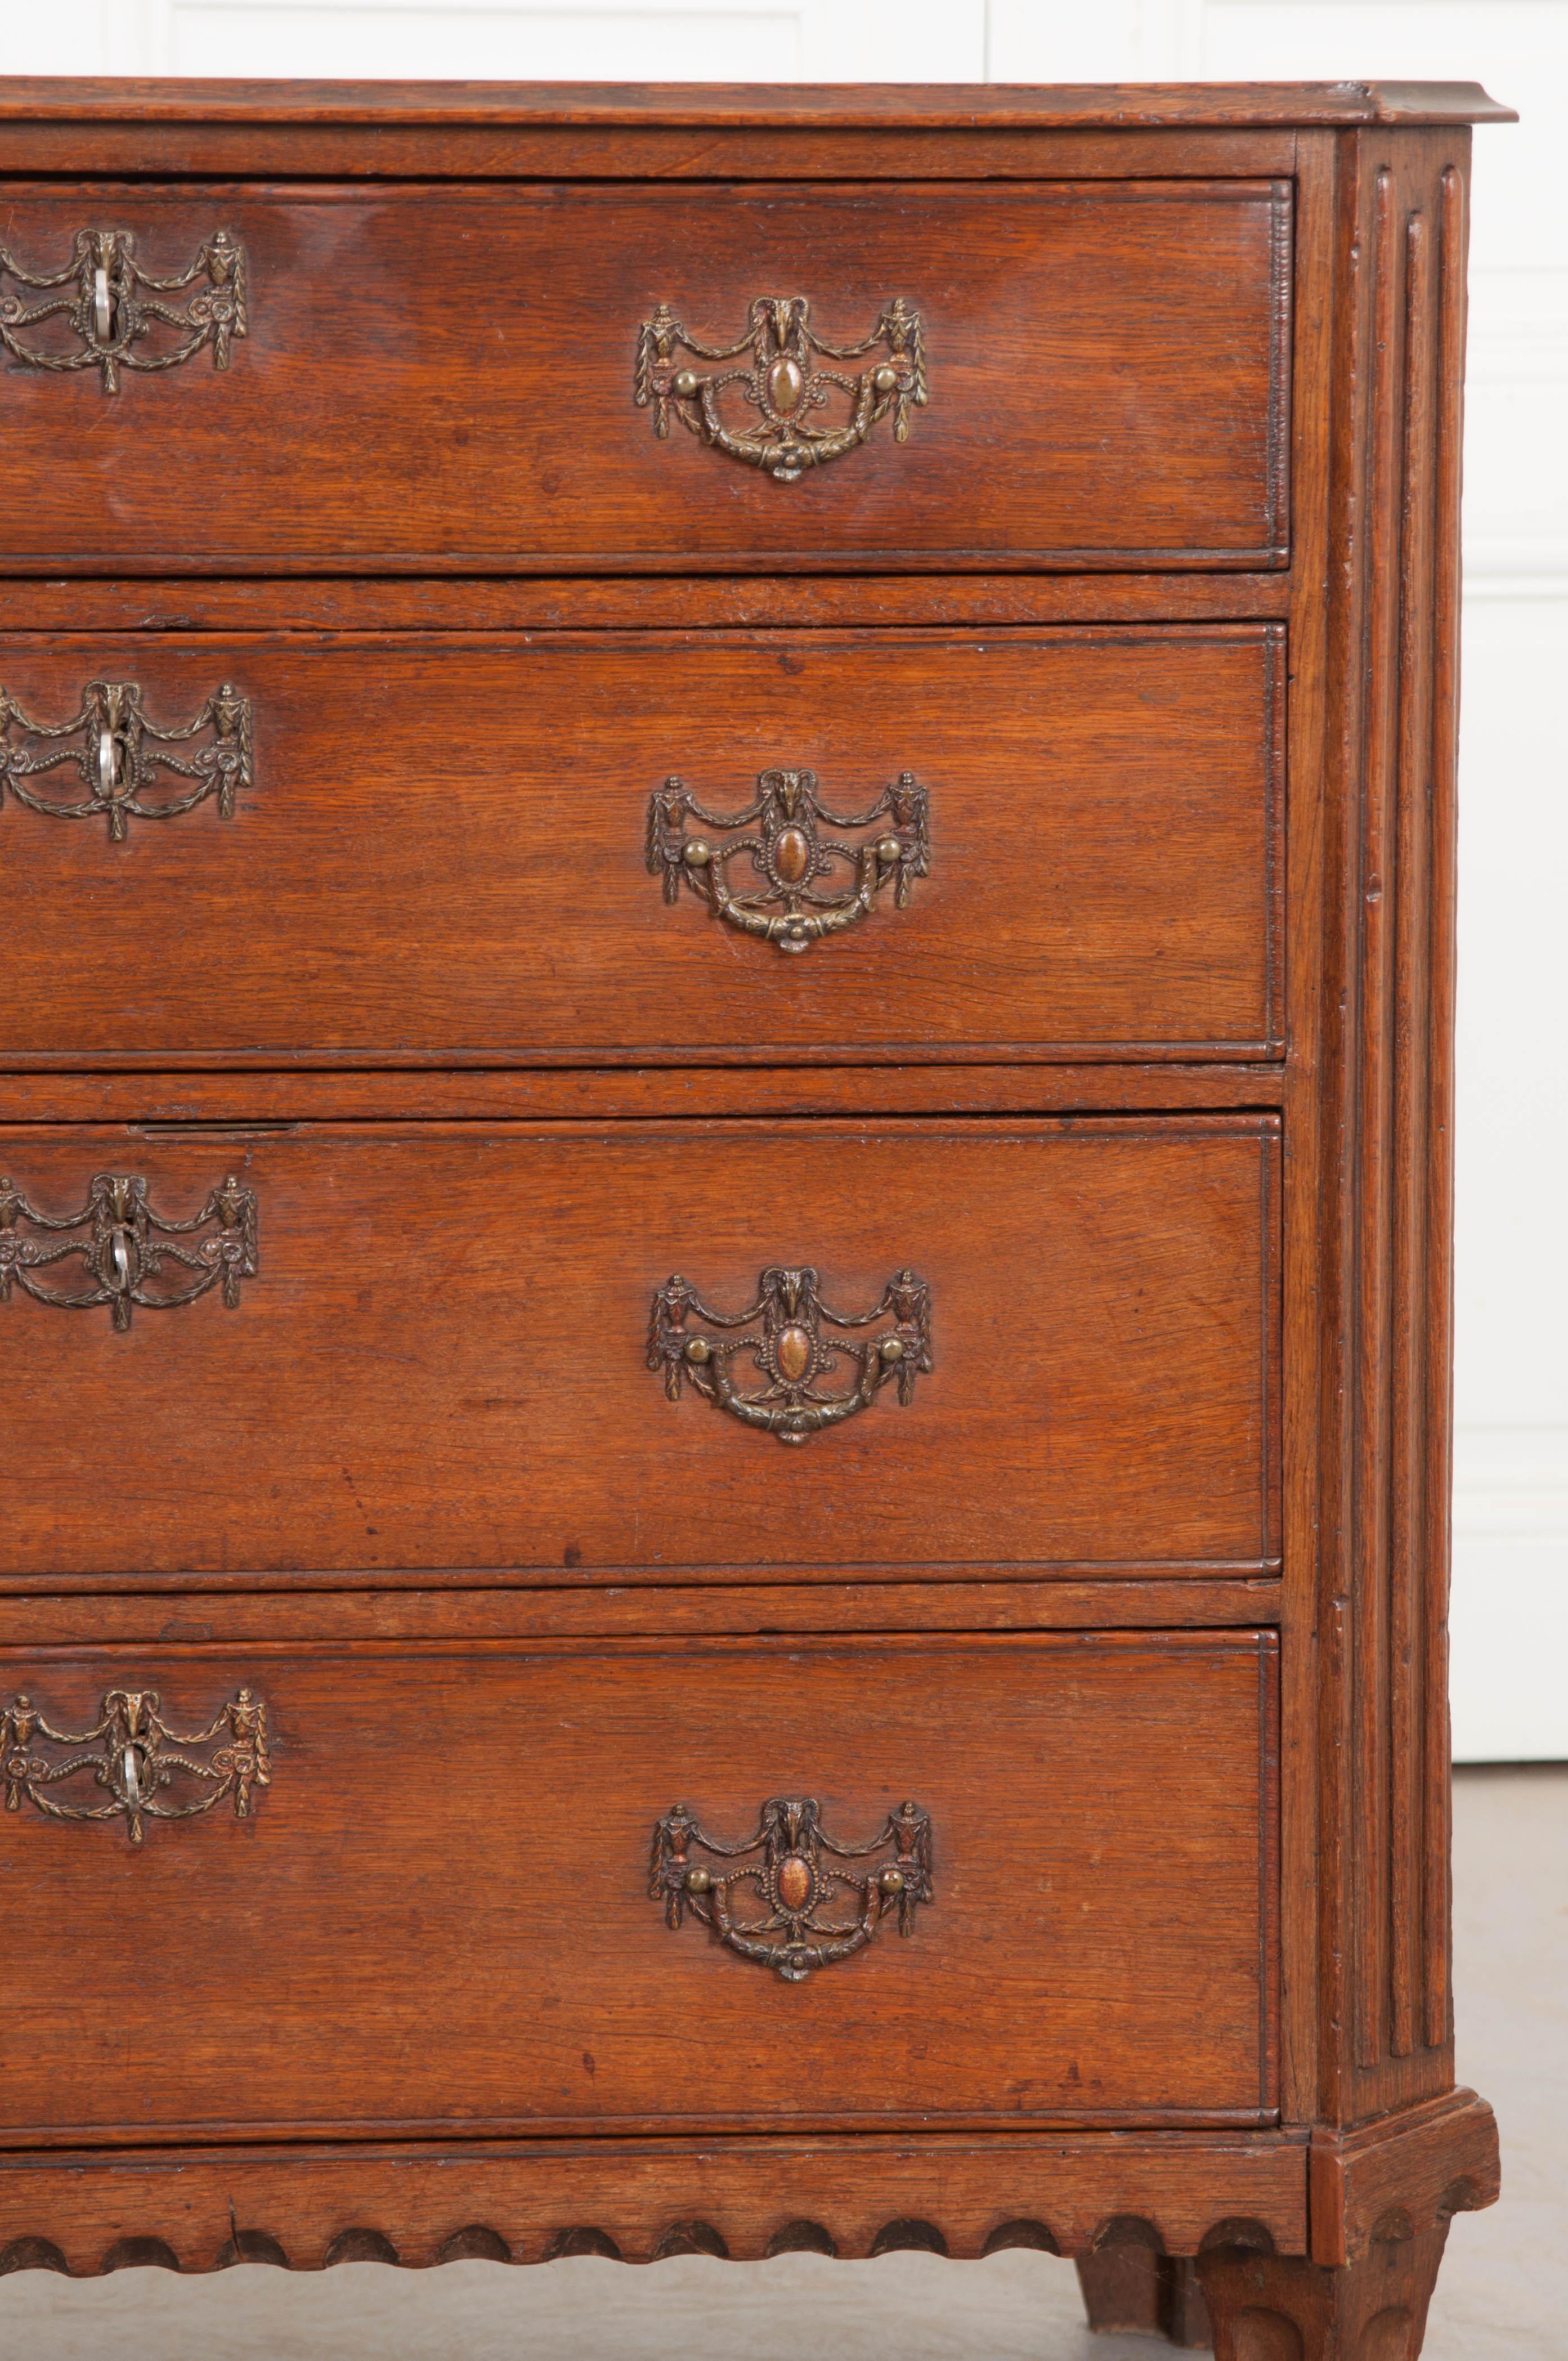 Diese Kommode aus Eichenholz im jakobinischen Stil stammt aus dem England der 1780er Jahre und verfügt über eine gewölbte Platte mit abgeschrägten und geriffelten Ecken. Es verfügt über vier lange Schubladen mit jeweils einem anderen Schloss und